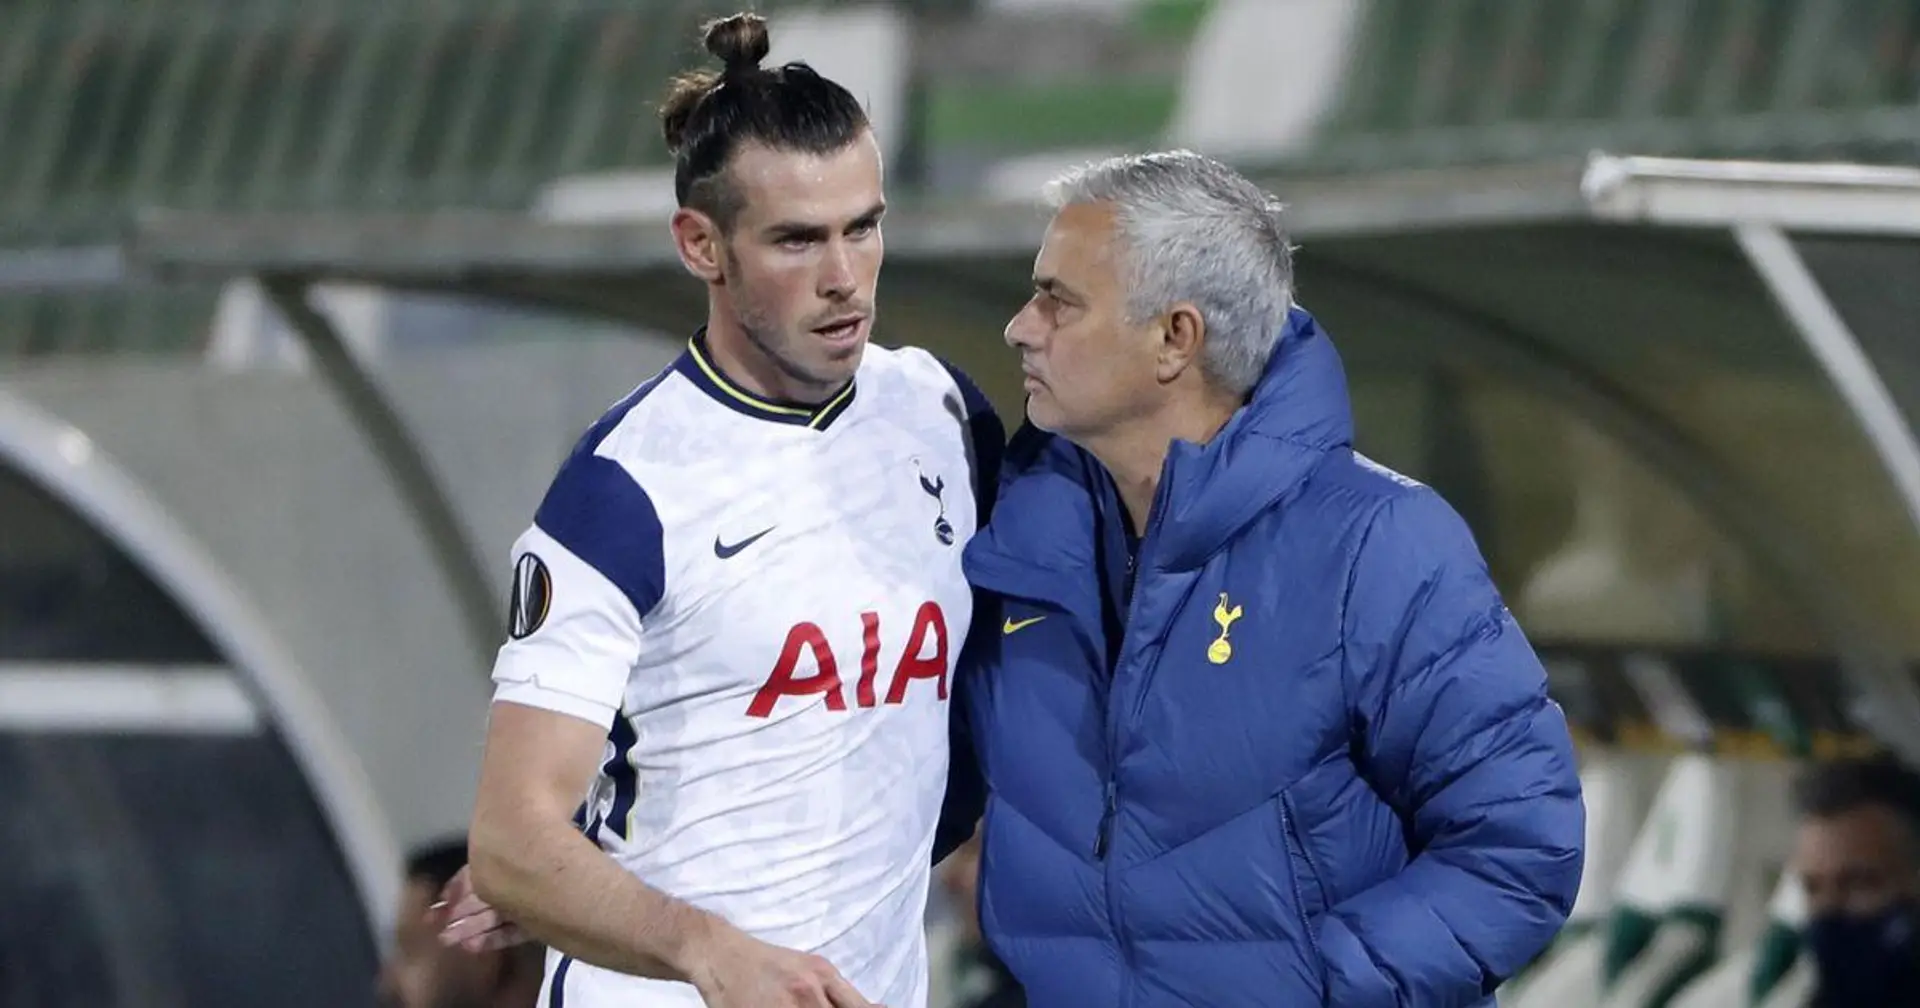 Mourinho: "Bale connaît son corps mieux que quiconque. Nous faisons confiance à son expérience et à son analyse"